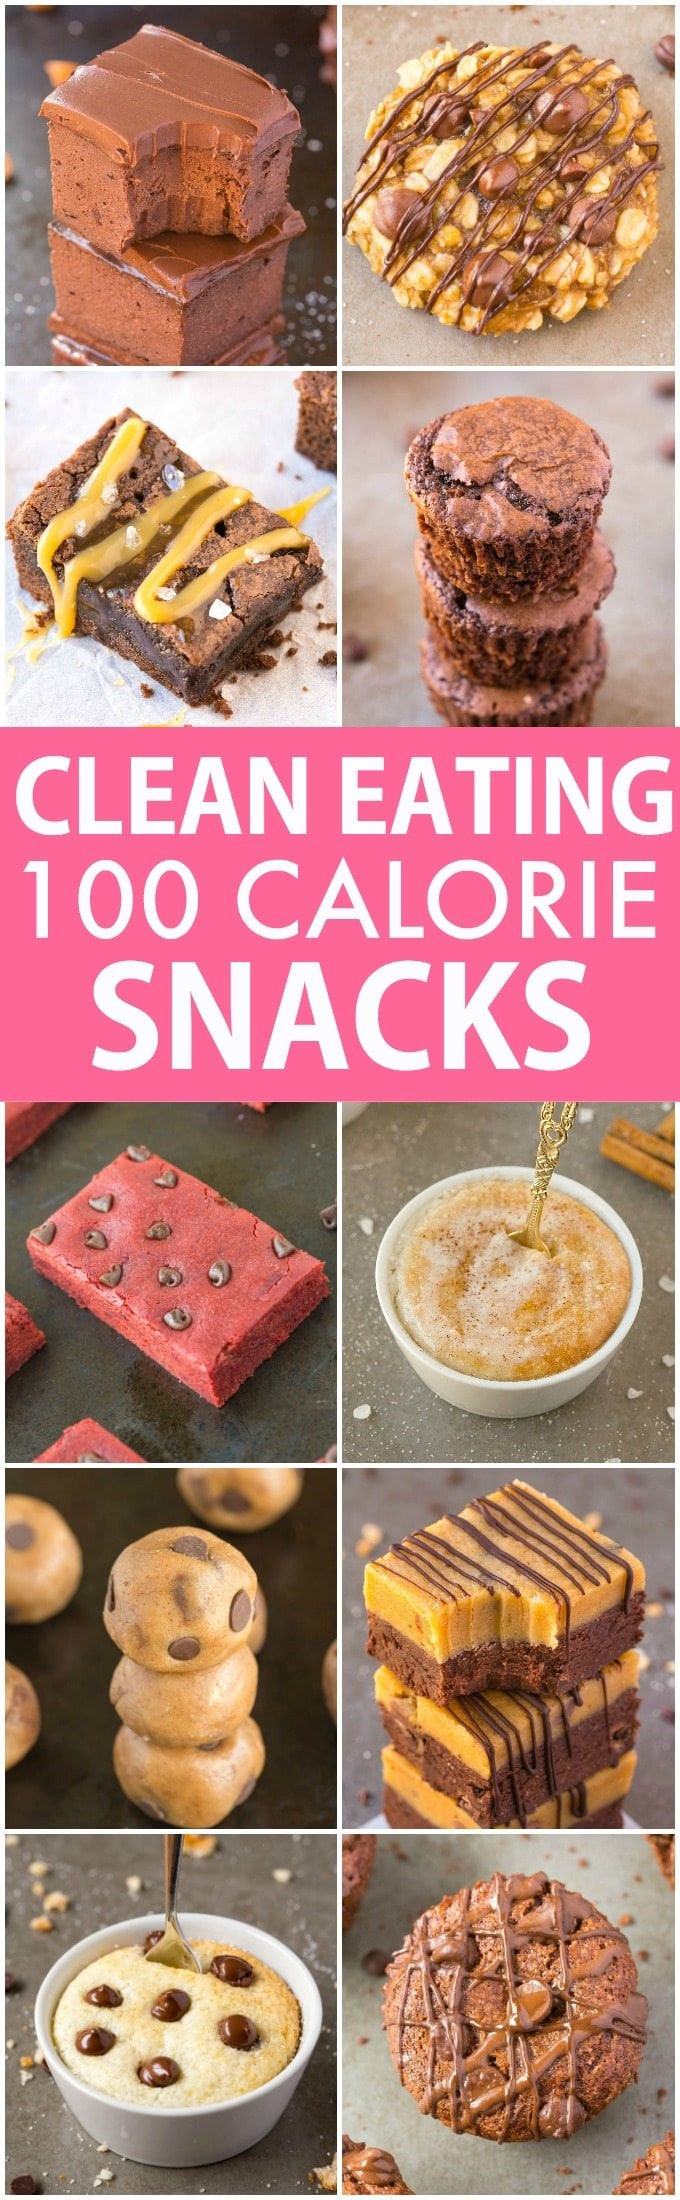 Sweet Snacks Recipes
 10 Clean Eating Healthy Sweet Snacks Under 100 Calories